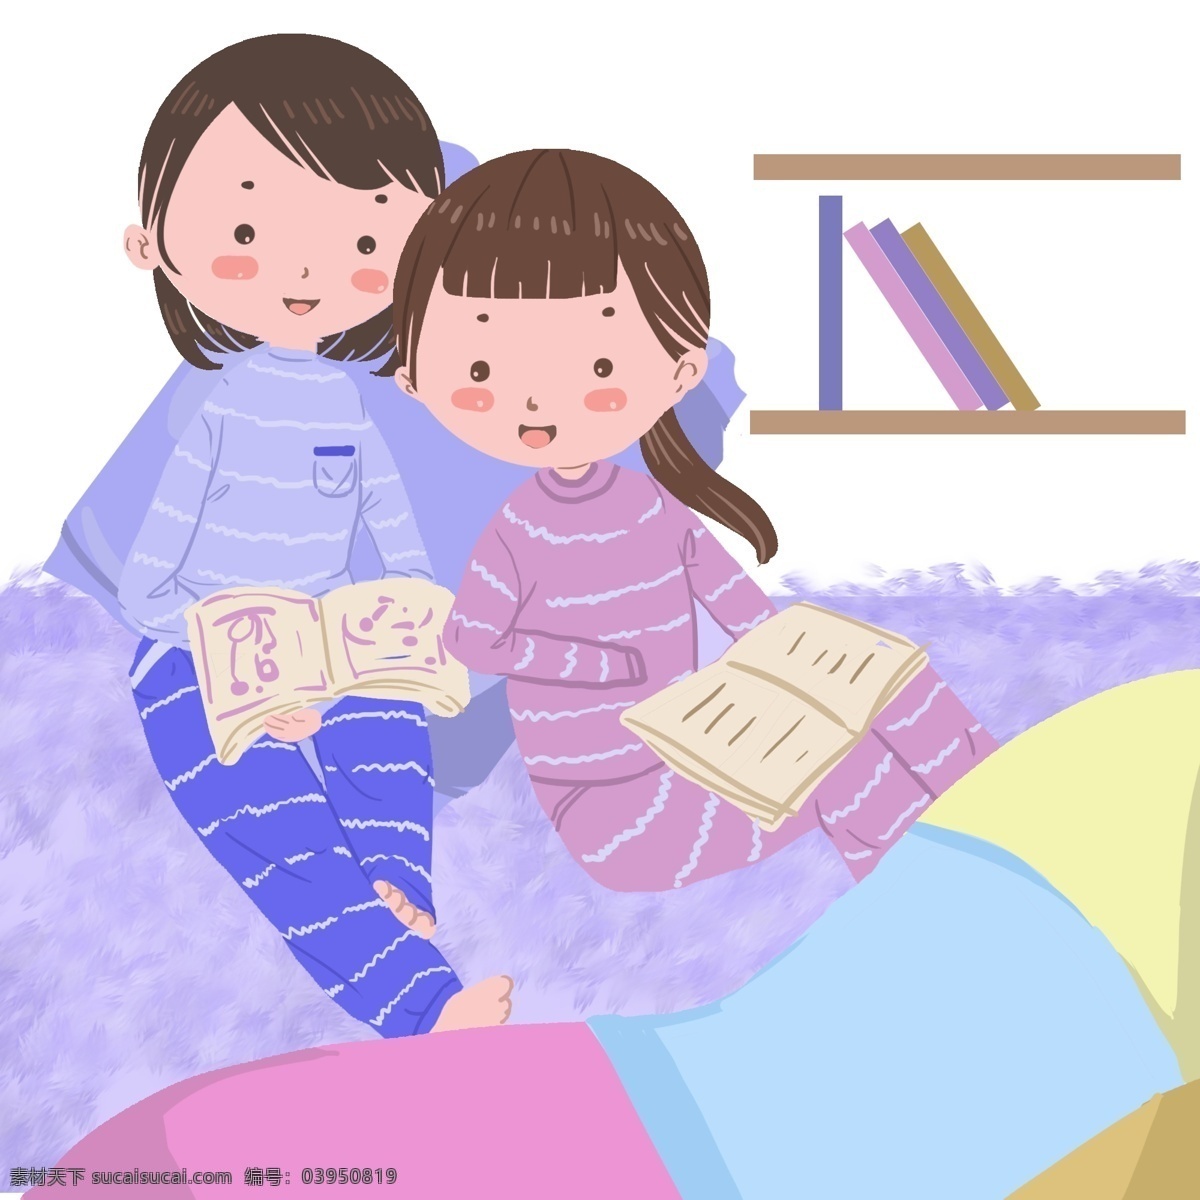 女孩 被窝 里 看书 冬季 严寒的冬天 两个女孩 小清新插图 五颜六色的被 温暖 安静的看书